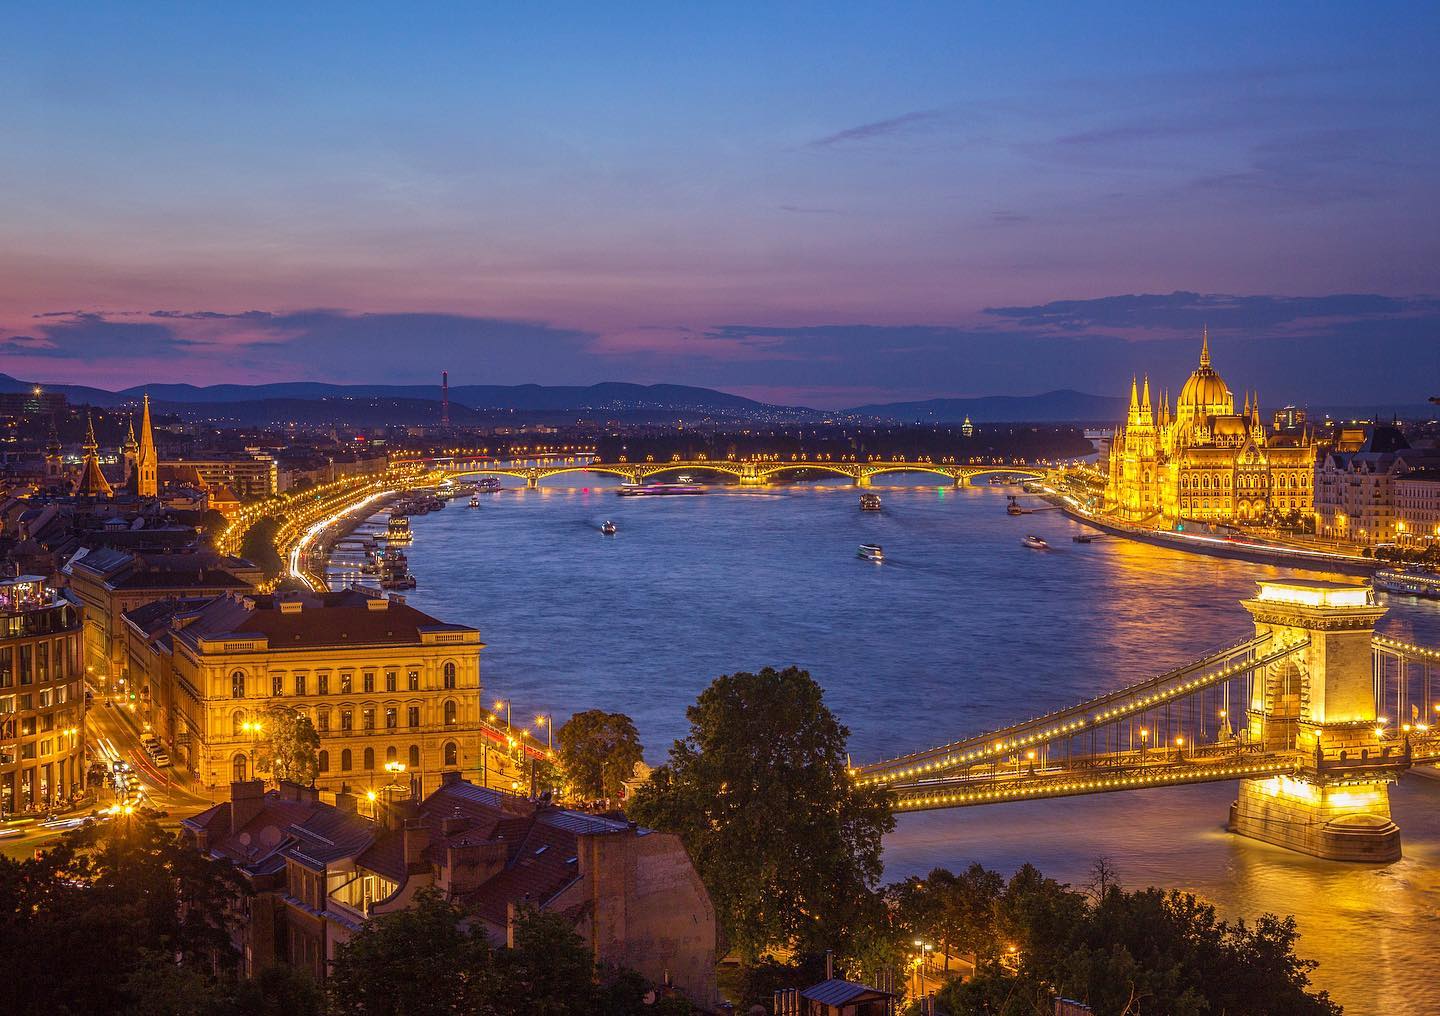 Budapest after sunset.
.
.
#budapest #hungary #szechenyi #szechenyibridge #chainbridge #europe #TopEuropePhoto #pest #night #longexposure #sunset #lighttrails #parliament #bridge #pestbynight #wonderful_places #travelblogger #travelling #travelphotography #travelgram #budapesthungary #budapestgram #budapestparliament #parlament #parliamentofbudapest  #bonjourbonvoyage #NIGHTSHOOTERS #budapesttravel #thebestravelgetaway #rsa_night